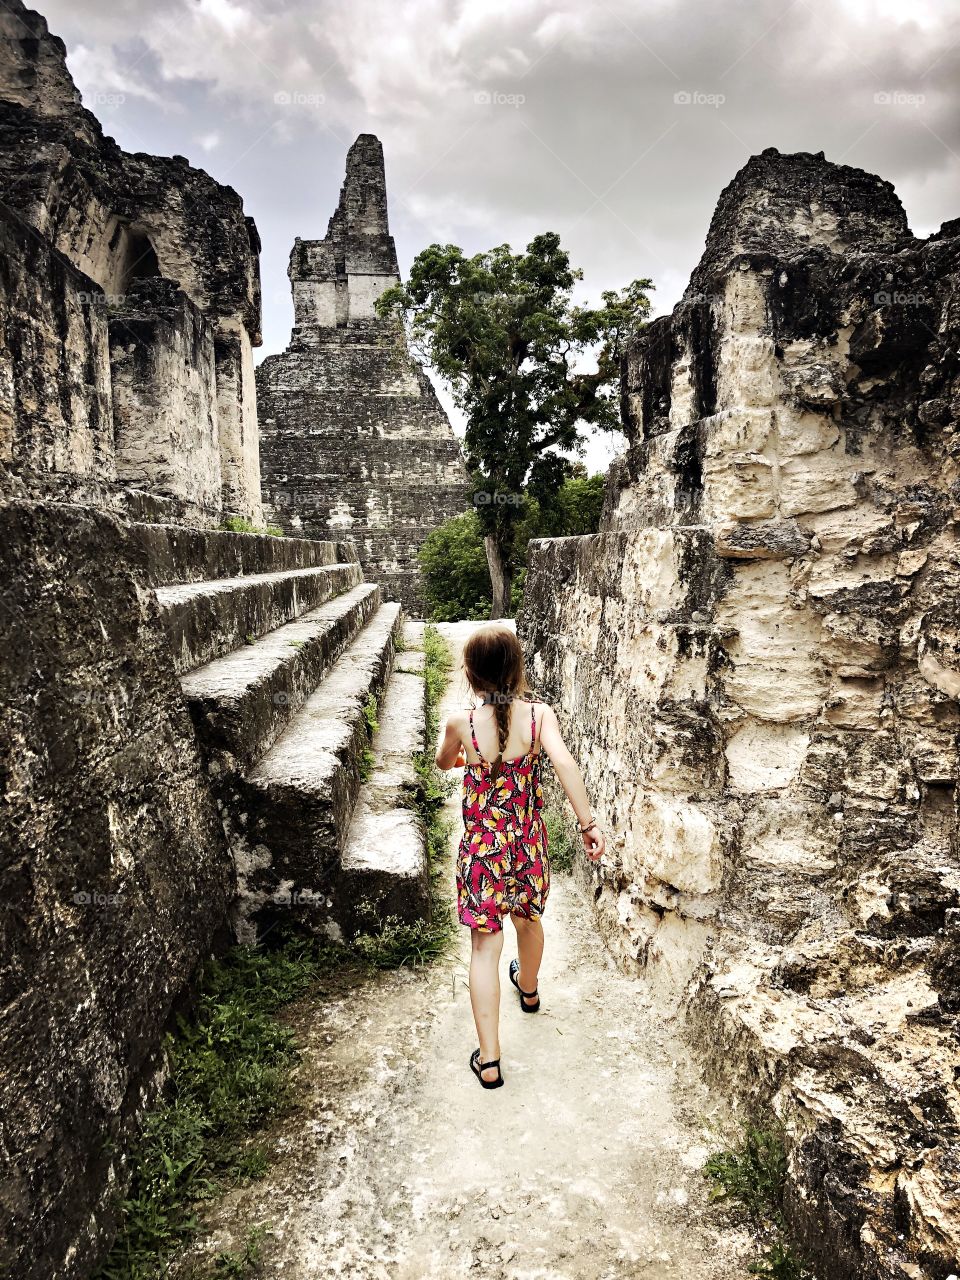 Child walking through Mayan ruins in Guatemala 